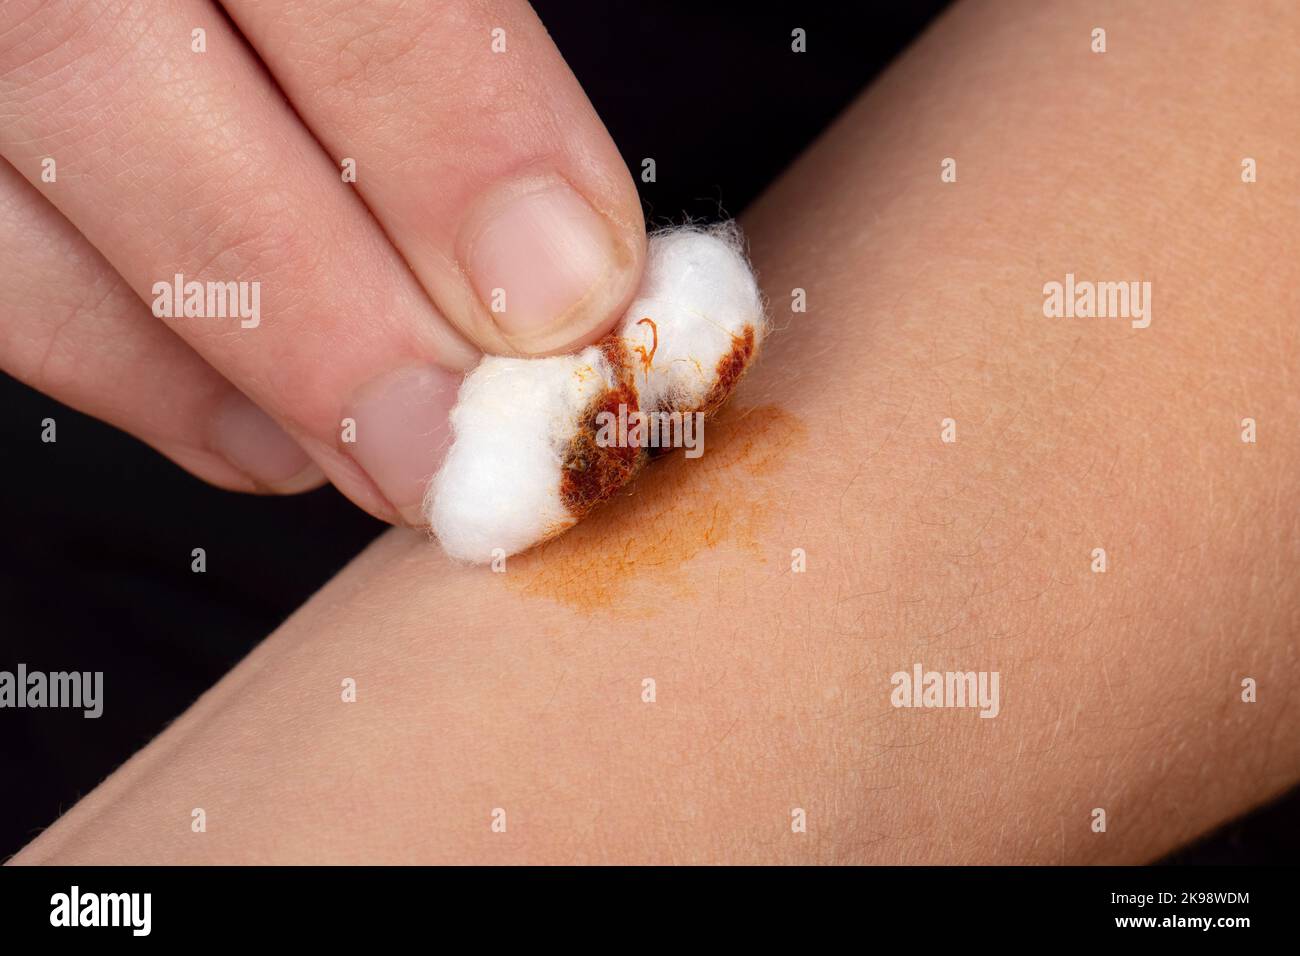 cauterizzazione di una ferita sul braccio con una soluzione di iodio e lana di cotone, salute della pelle. Foto Stock